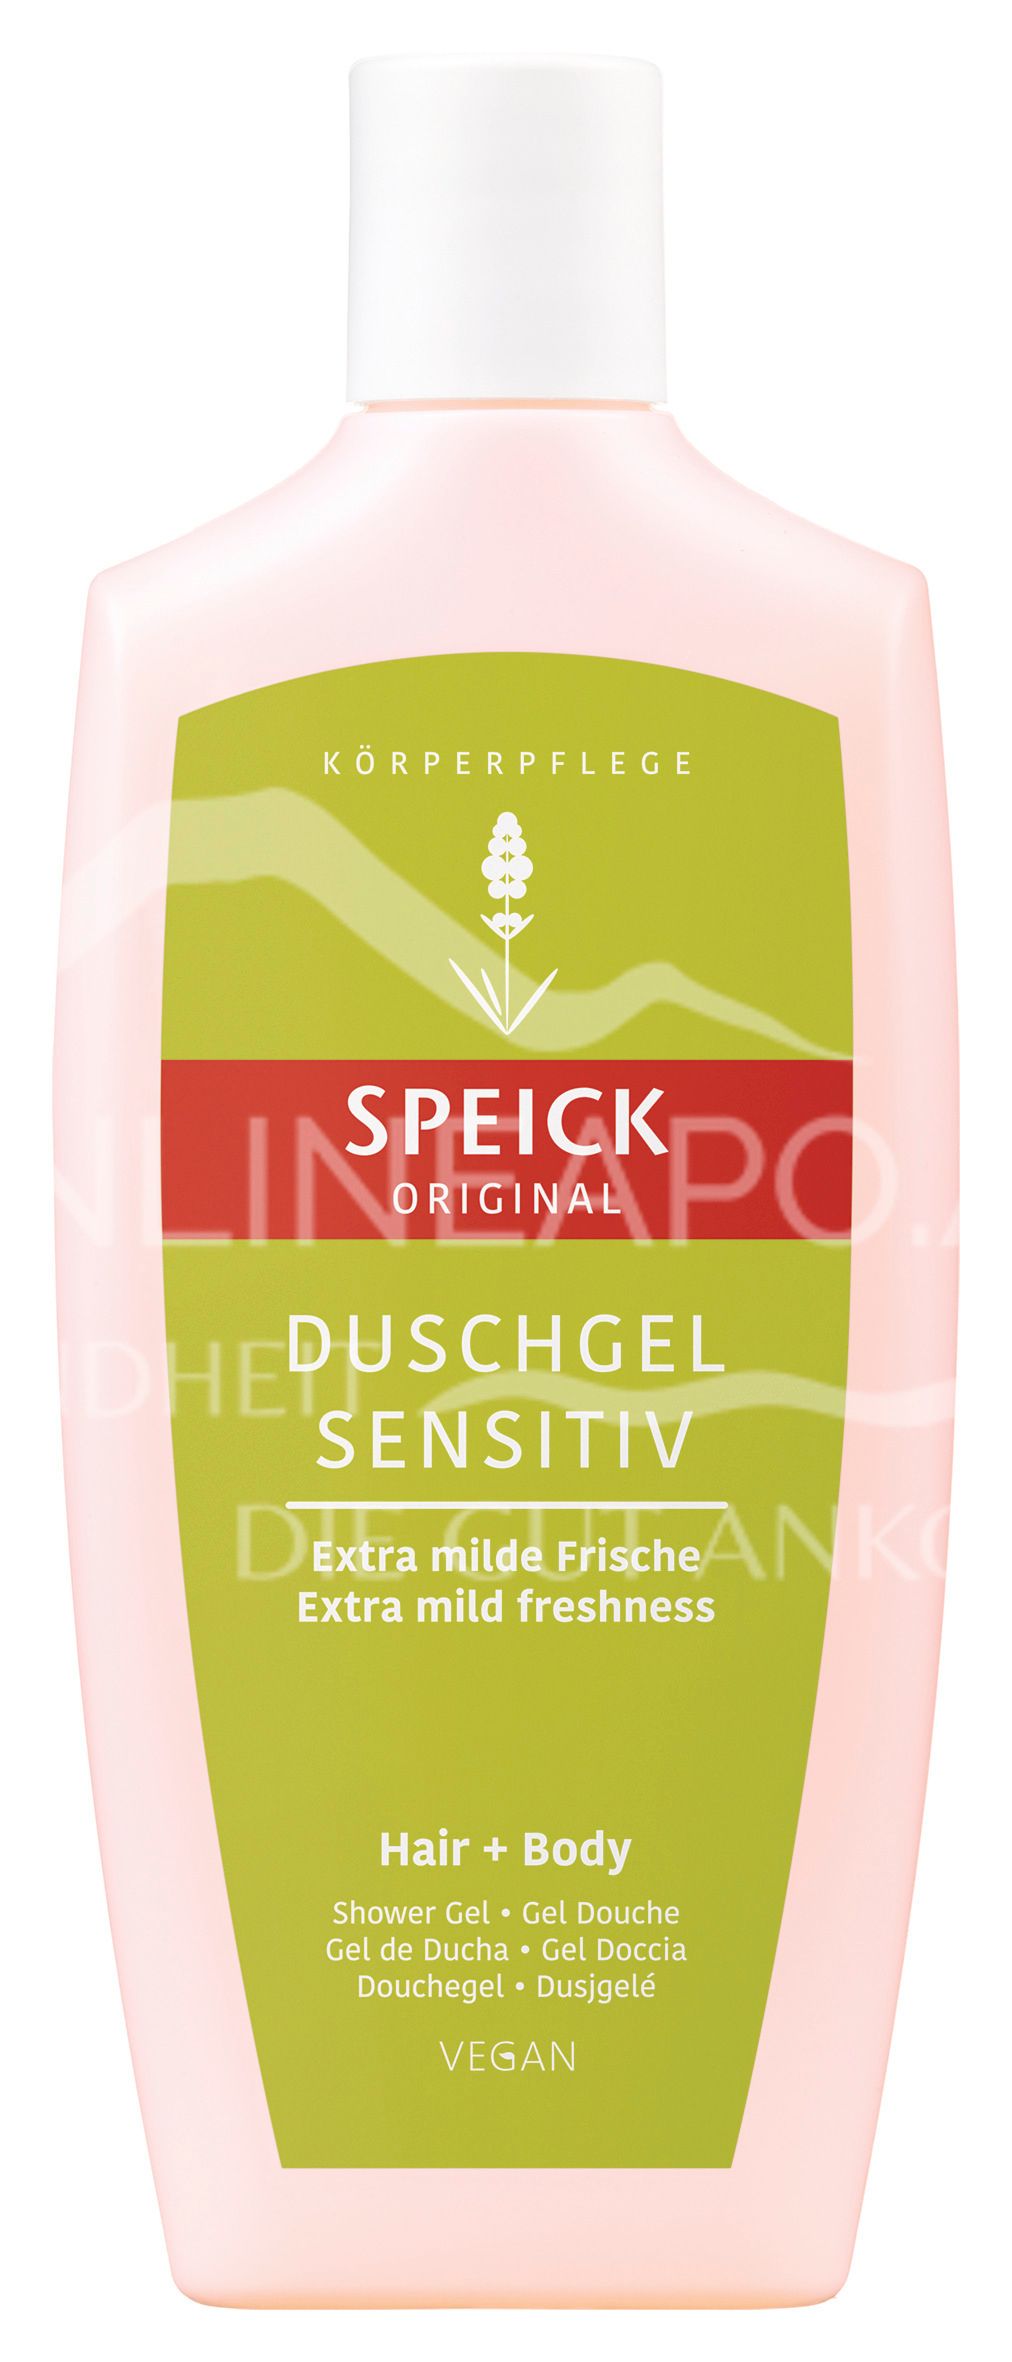 Speick Original Duschgel Sensitiv